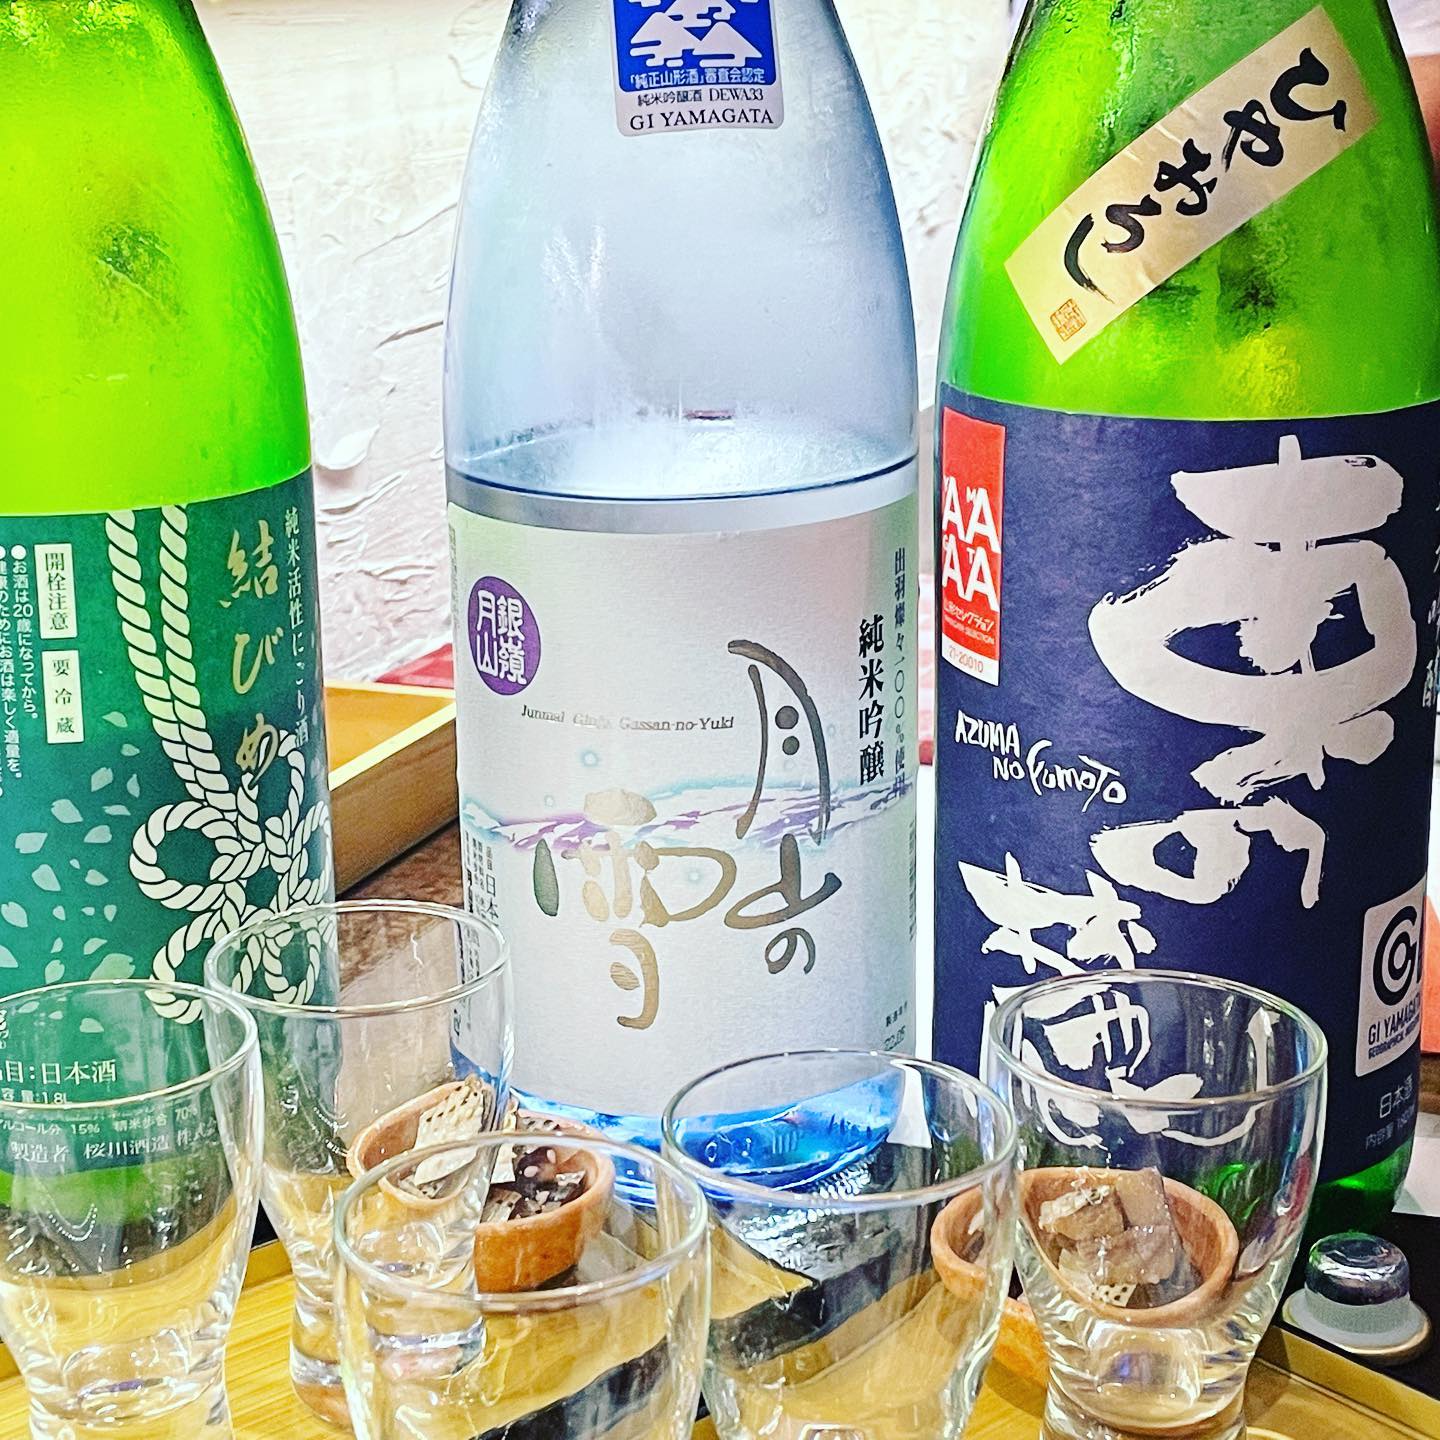 昨夜は日本酒祭り、肴も美味しかったな。 #sake #日本酒